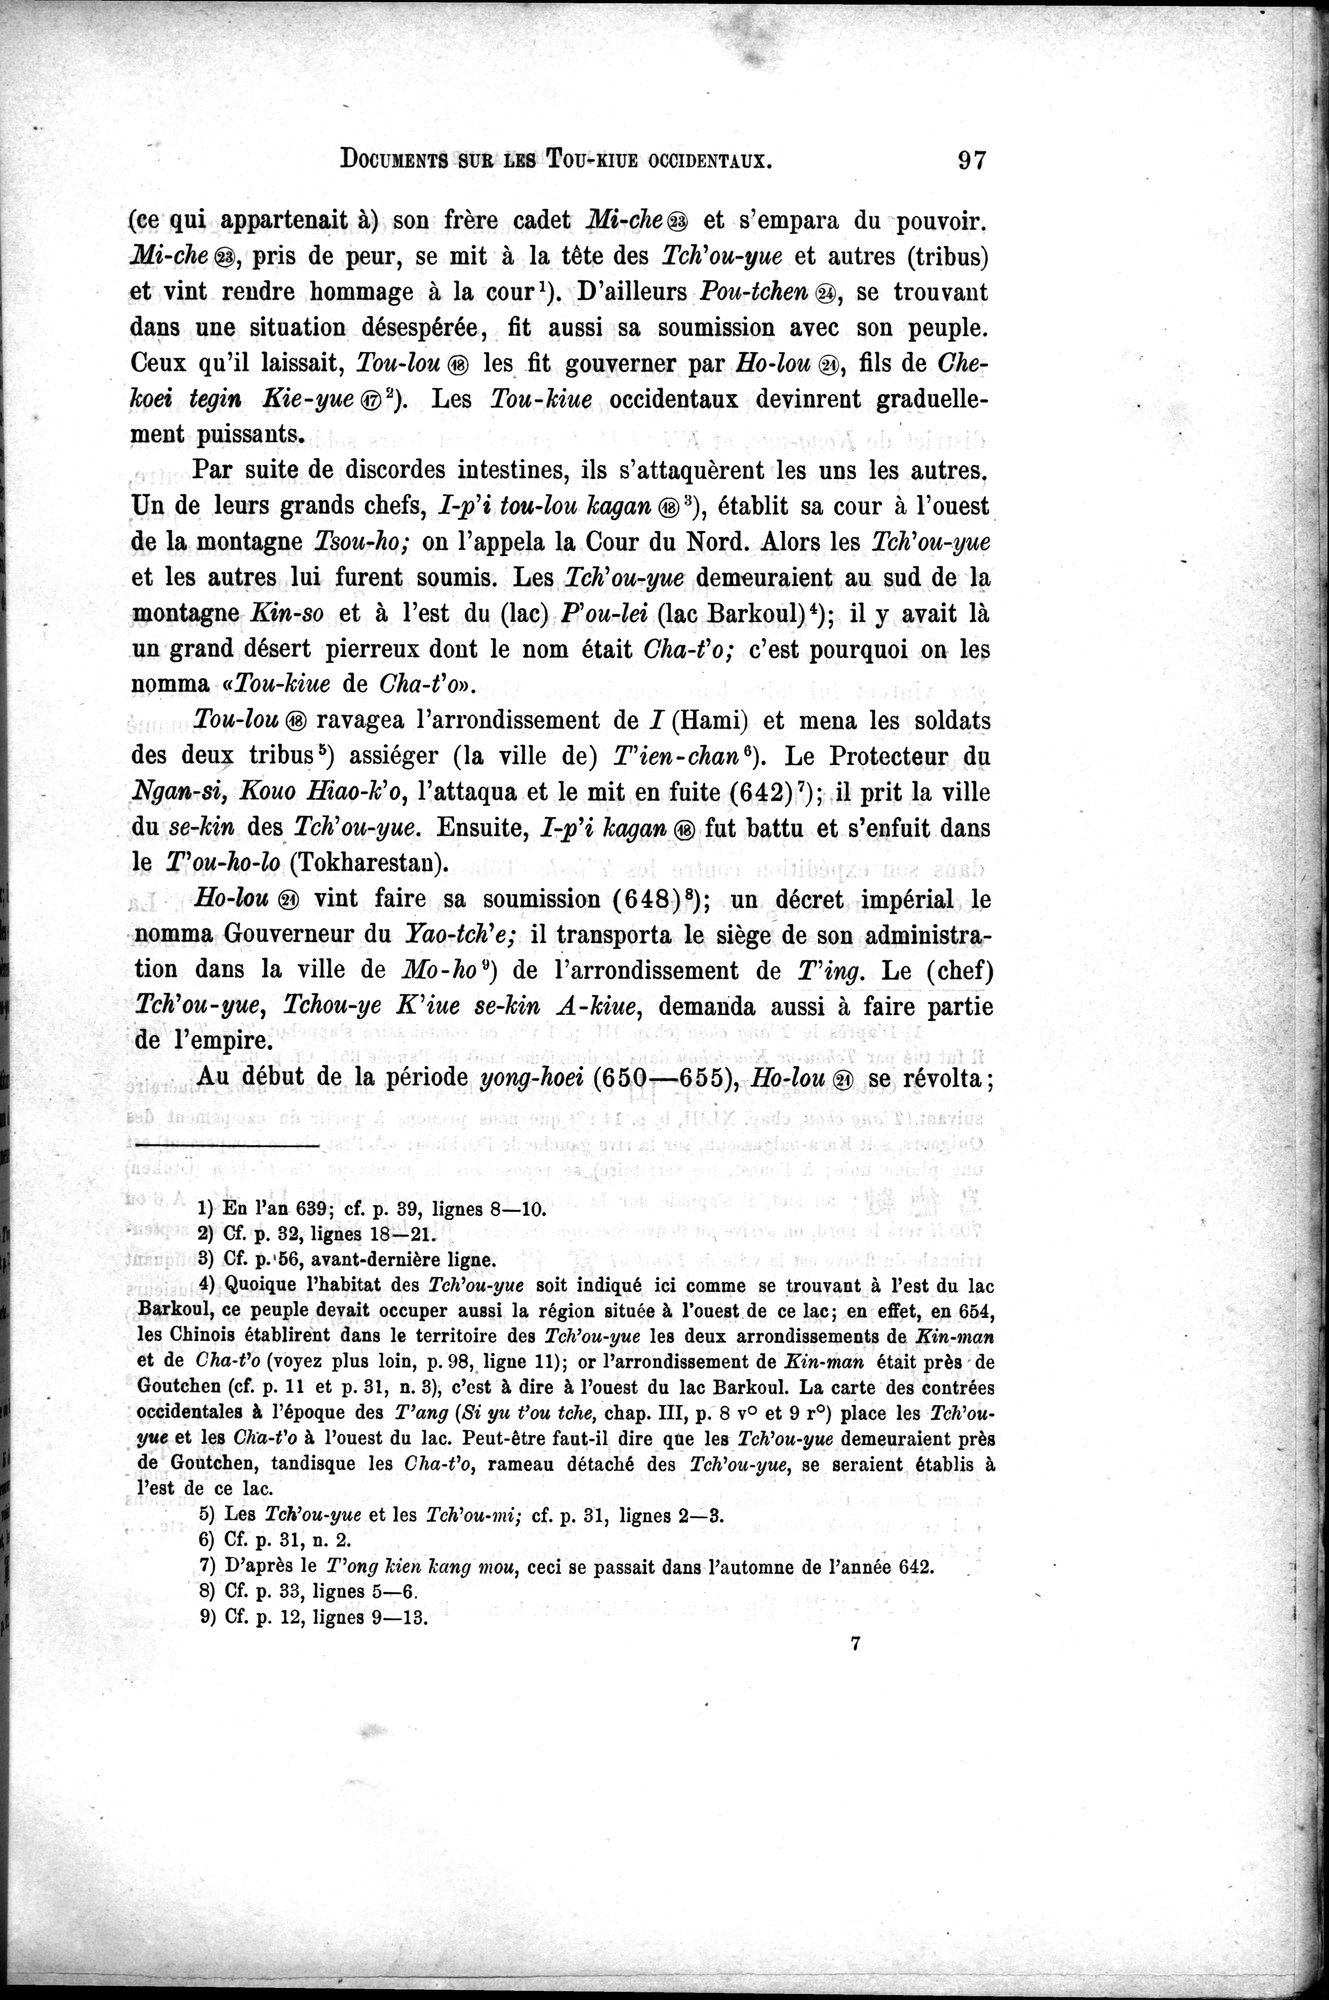 Documents sur les Tou-kiue (Turcs) occidentaux : vol.1 / Page 107 (Grayscale High Resolution Image)